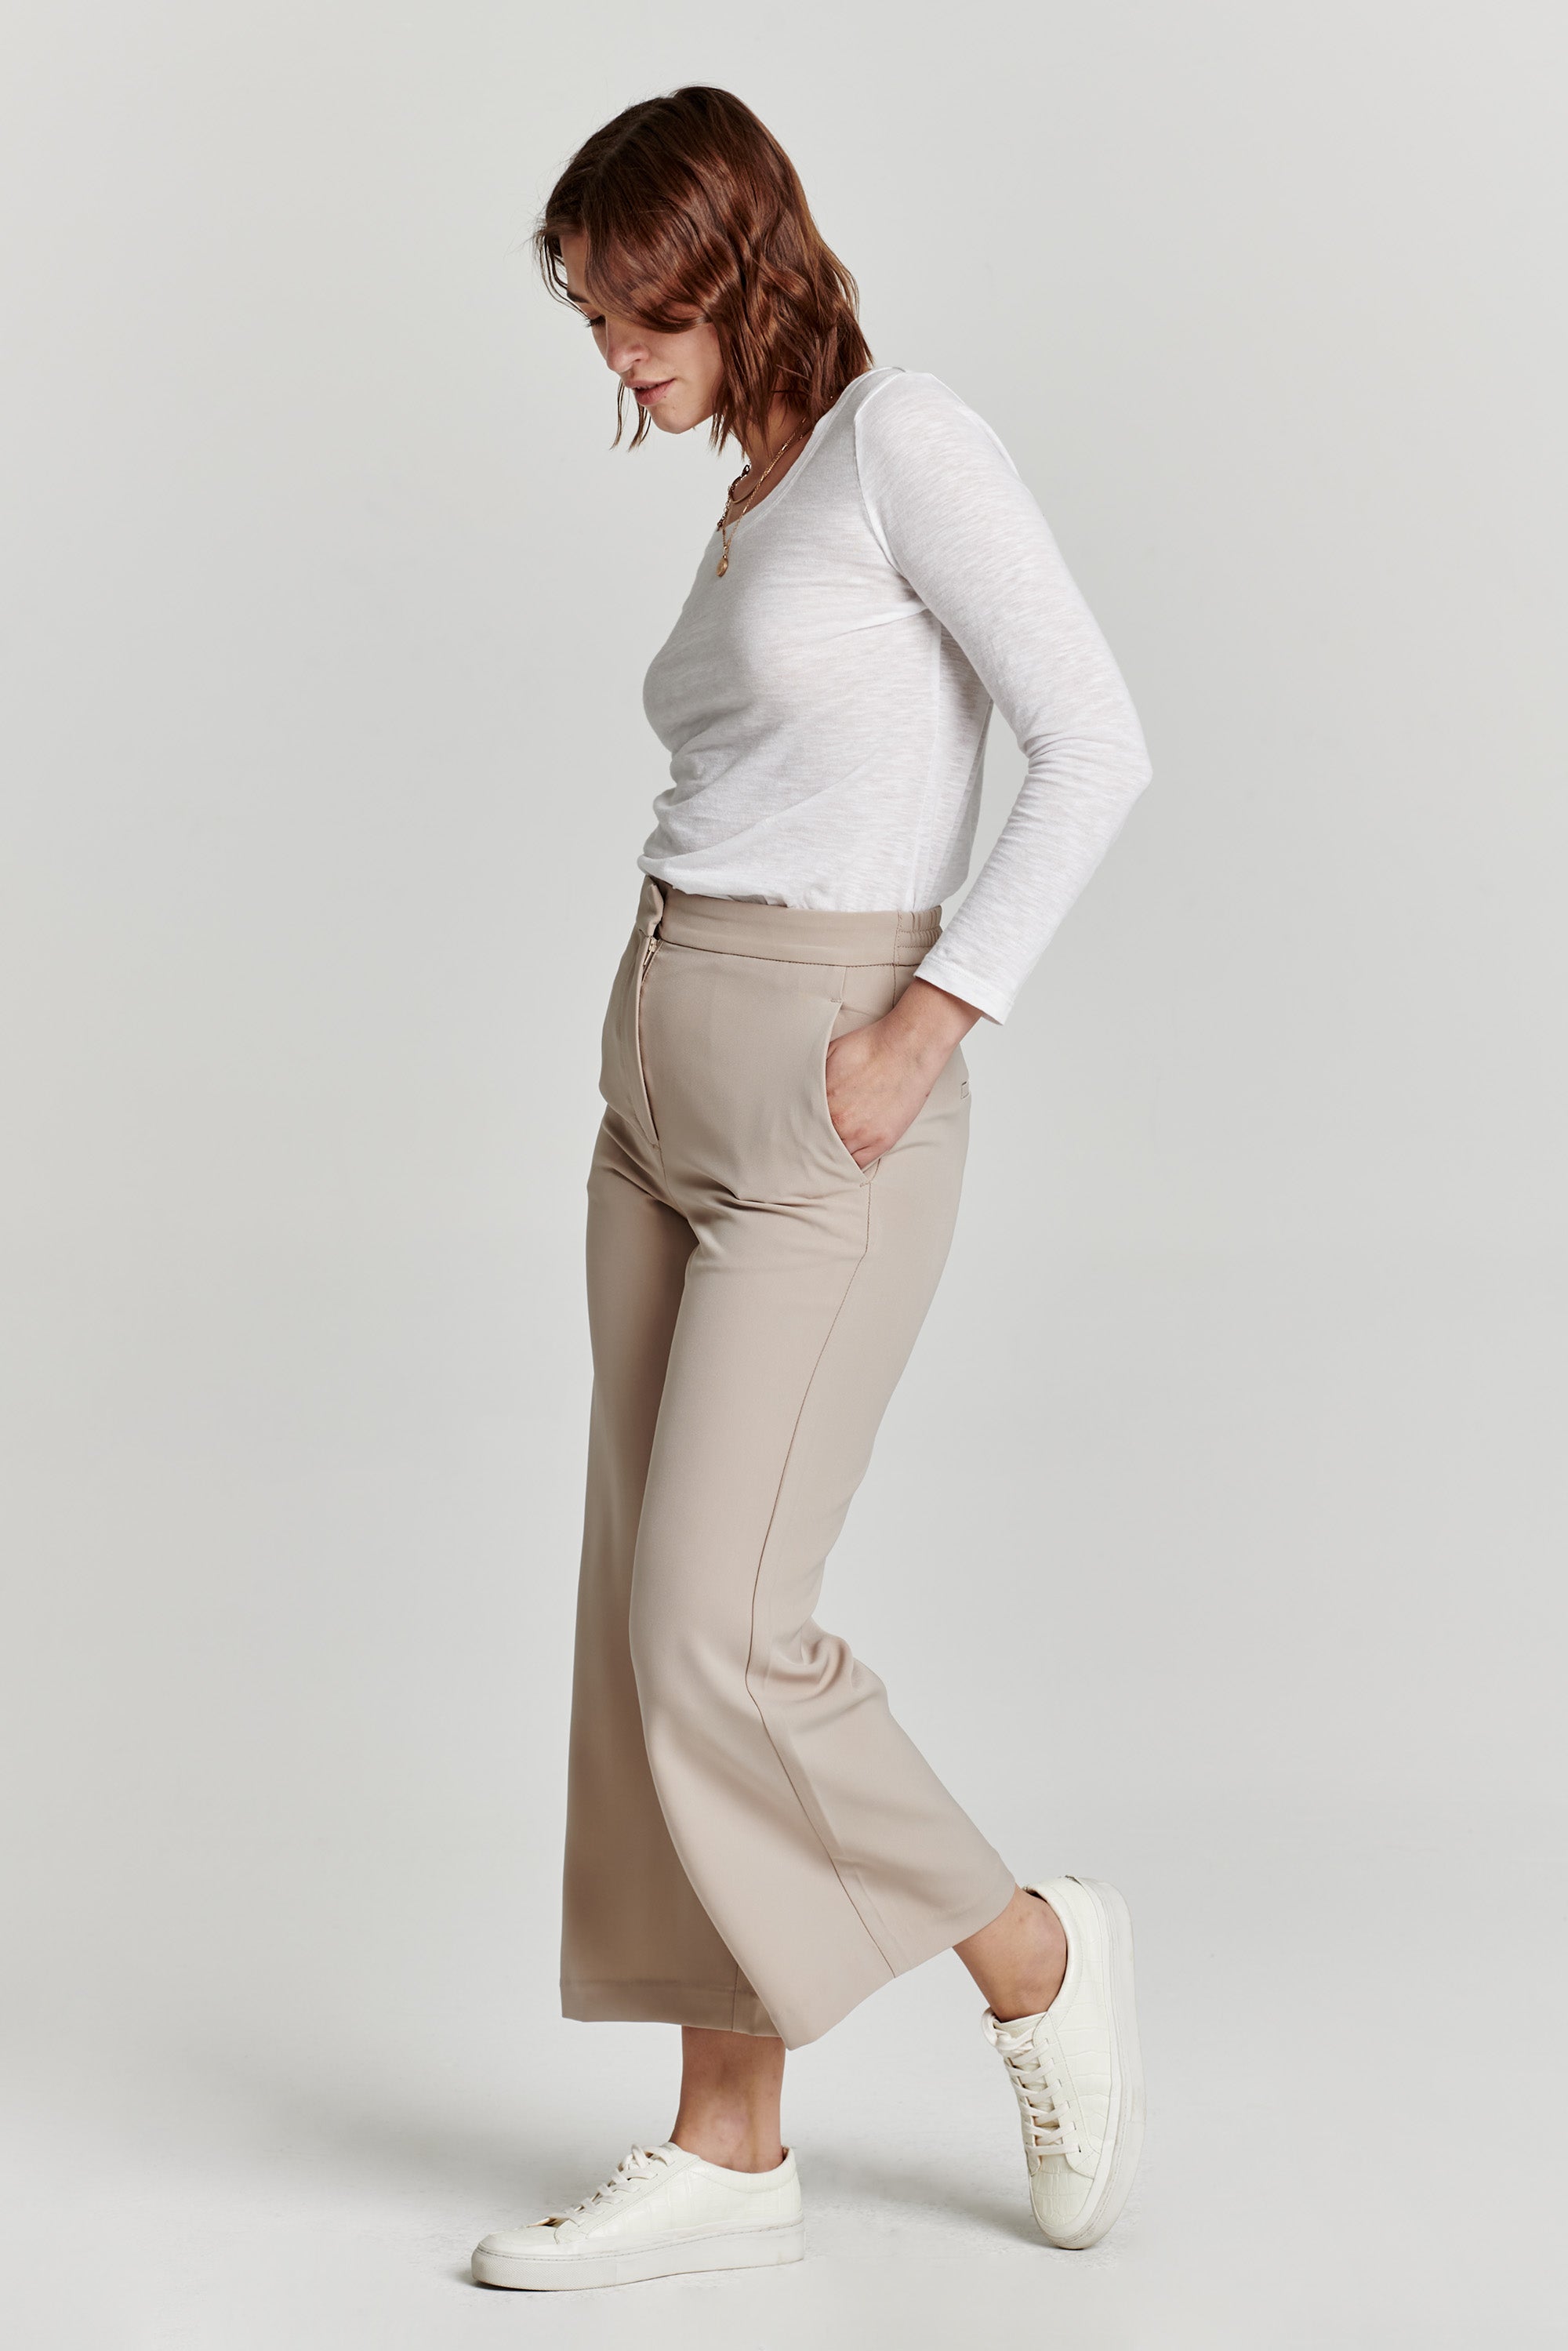 Women's Wide Leg Crop Jean in Caramel | Postie